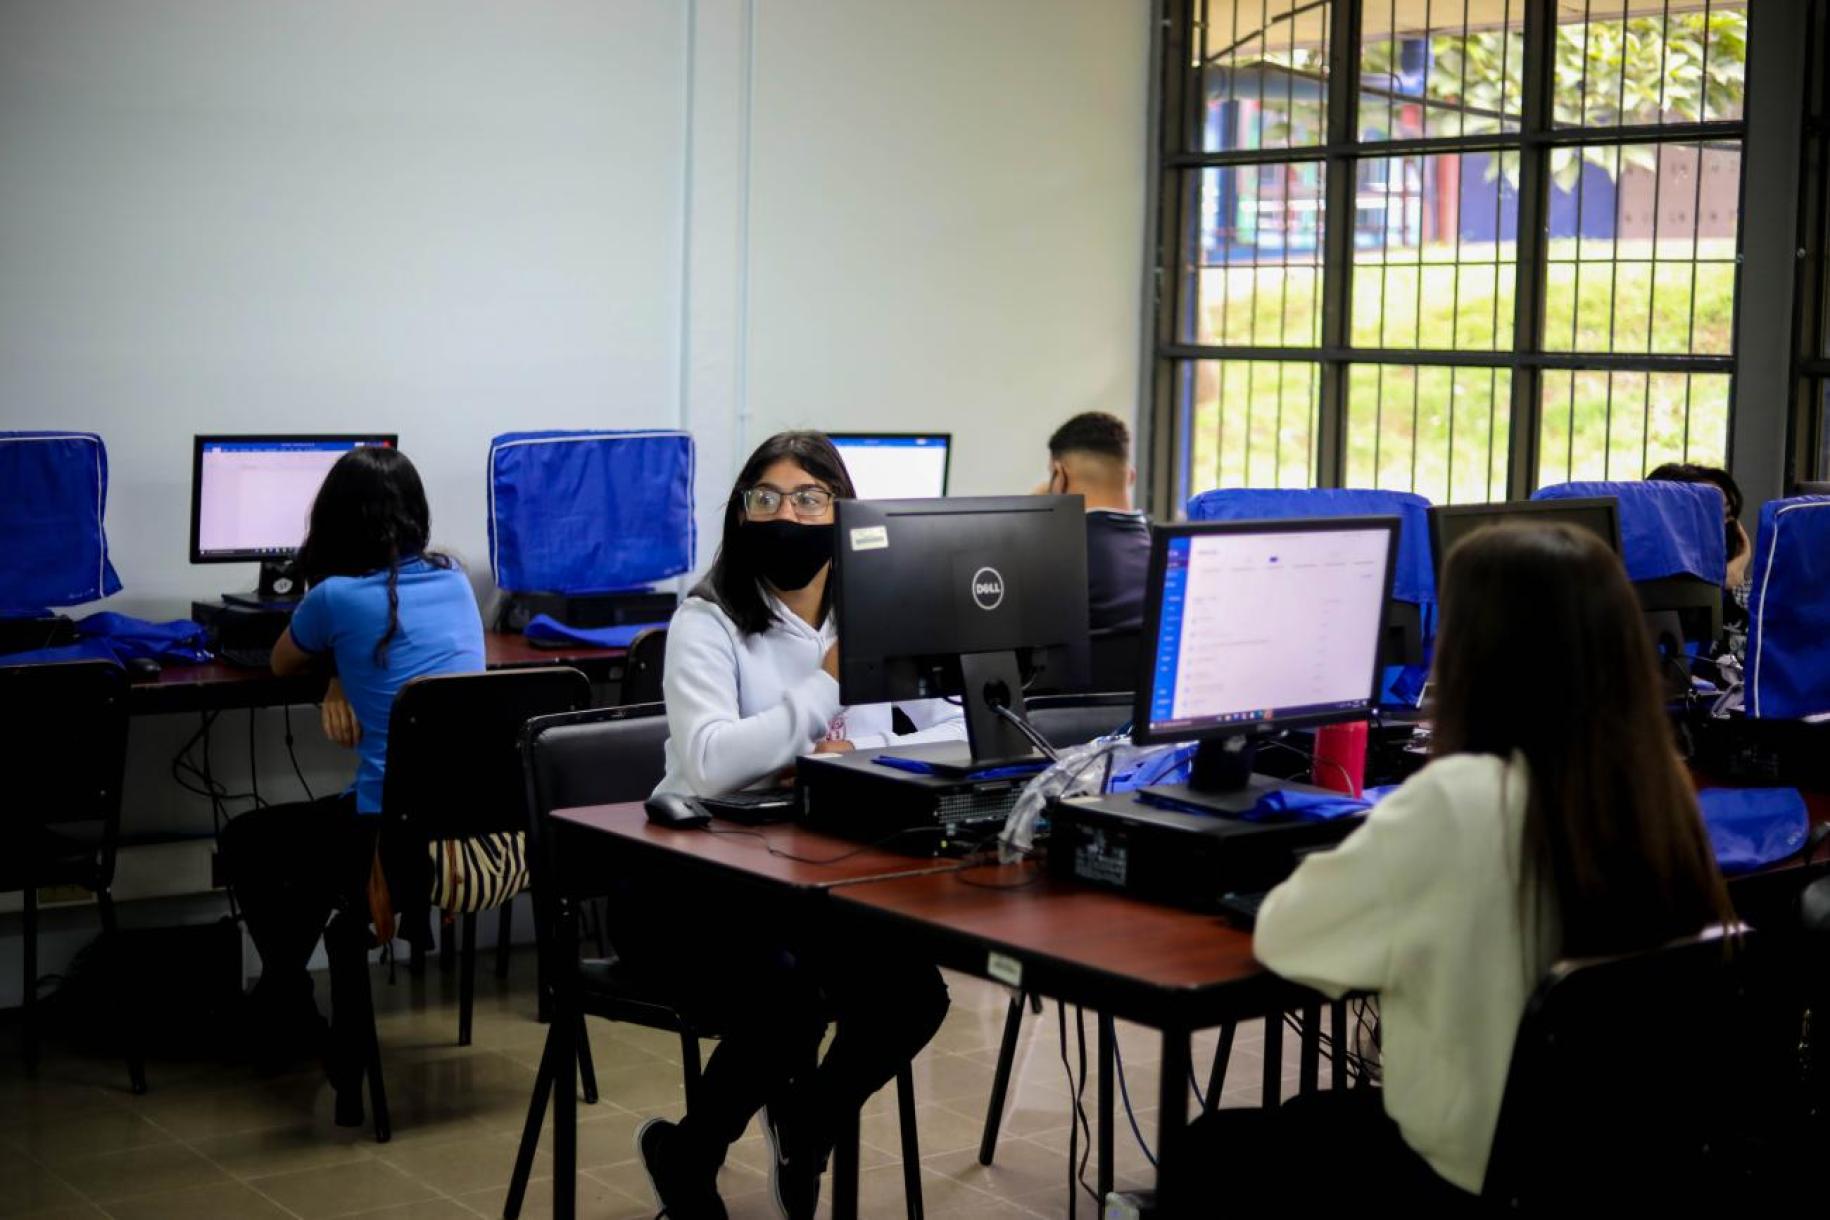 مجموعة من الطلاب يجلسون أمام شاشات الكمبيوتر في فصل دراسي.